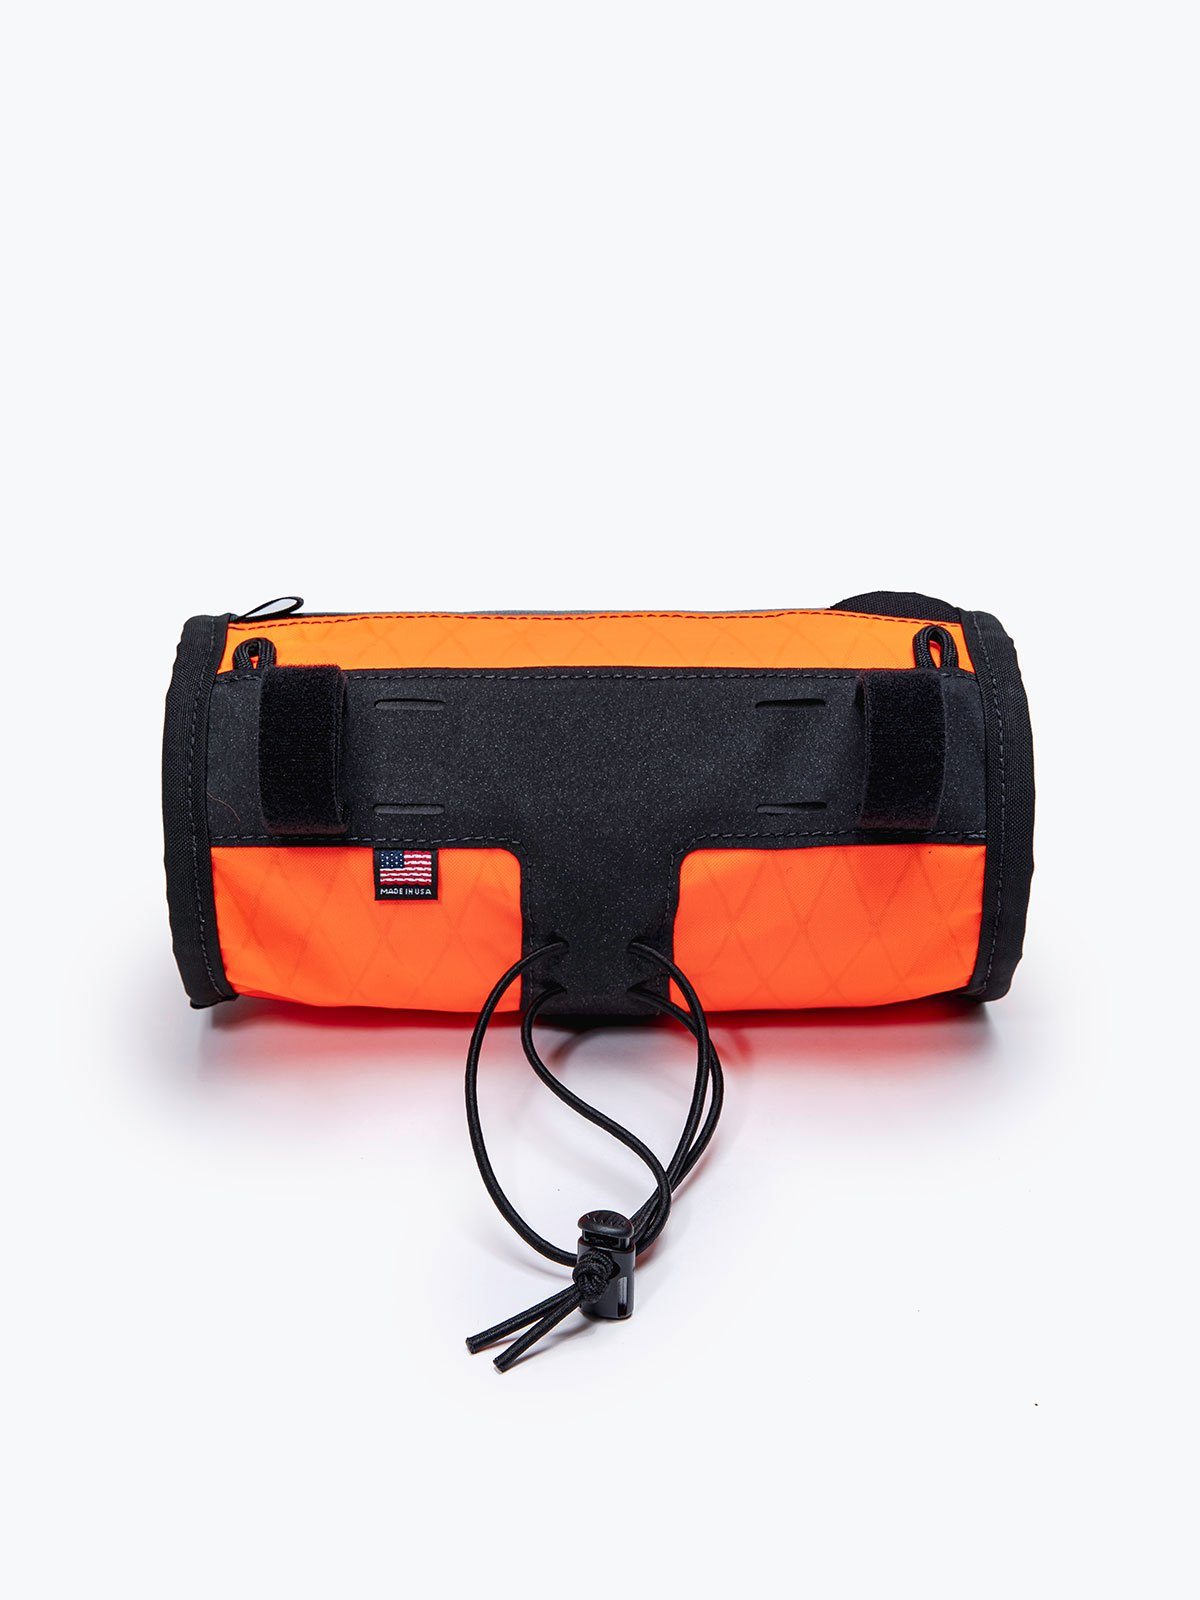 Toro Handlebar Bag by Mission Workshop - Bolsas resistentes a la intemperie y ropa técnica - San Francisco y Los Angeles - Construidas para durar - Garantizadas para siempre